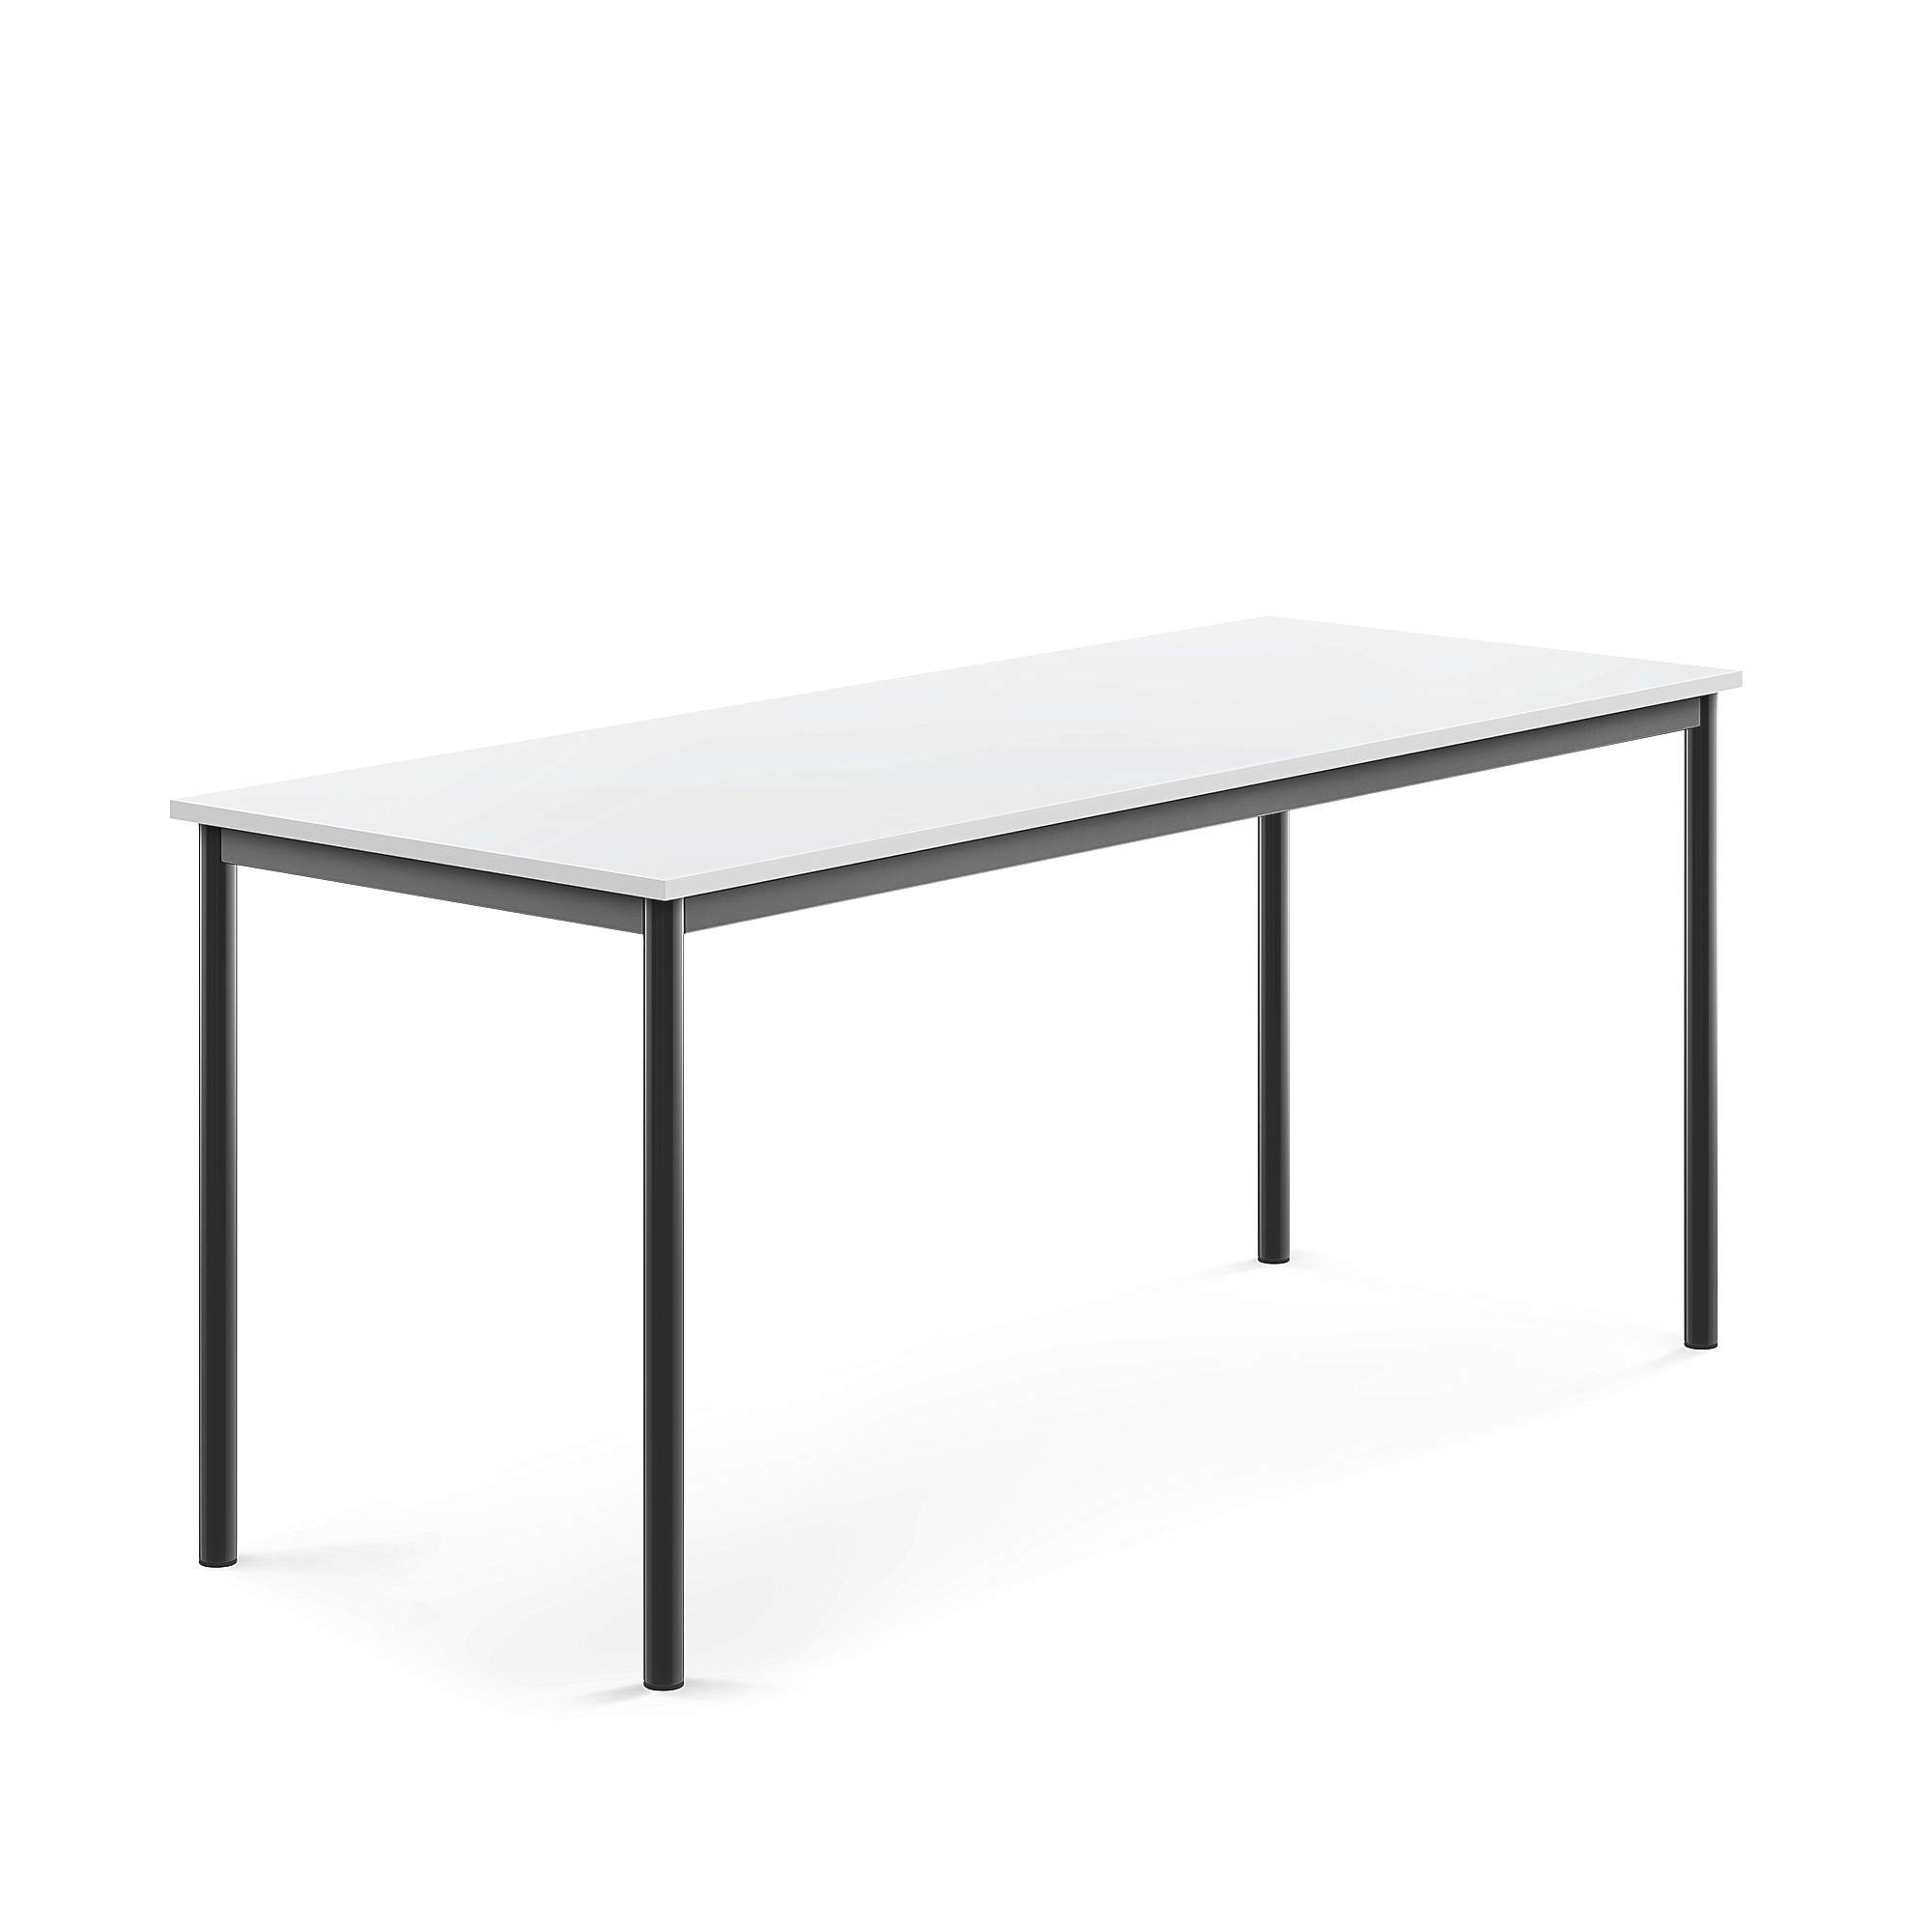 Stůl SONITUS, 1800x700x760 mm, antracitově šedé nohy, HPL deska tlumící hluk, bílá